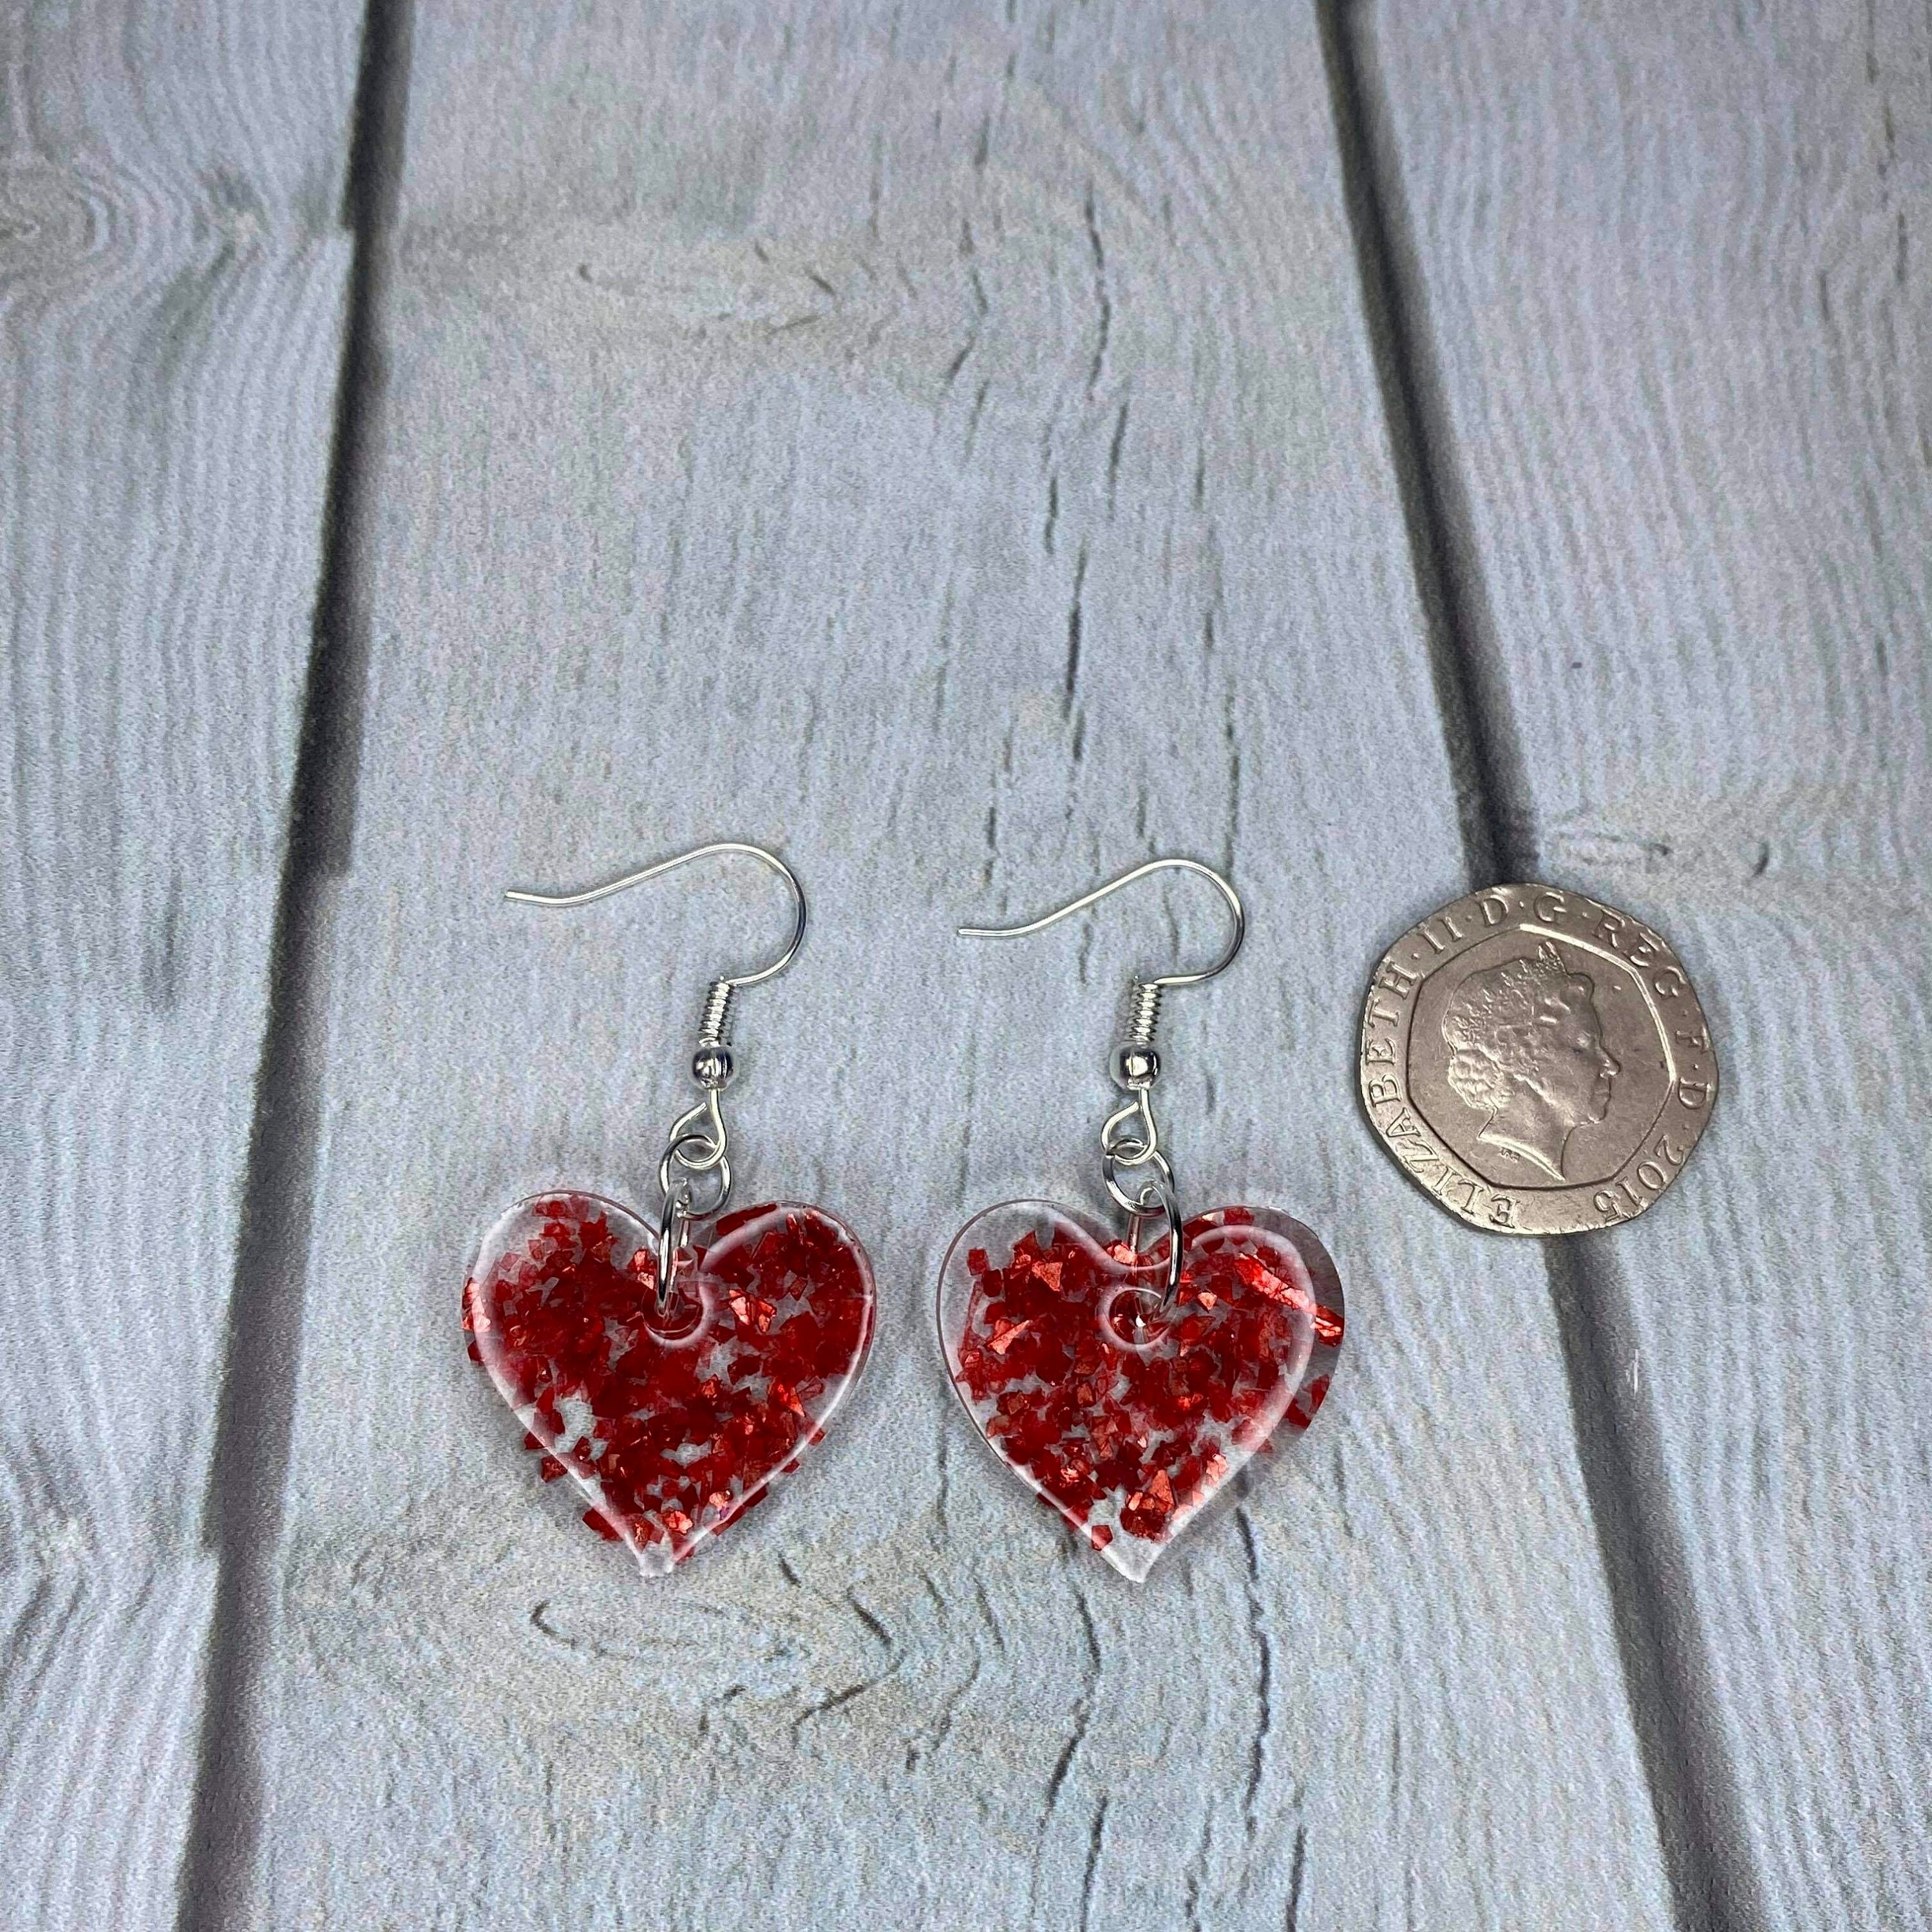 Heart Earrings Red Heart Earrings Glitter Heart Earrings | Etsy UK